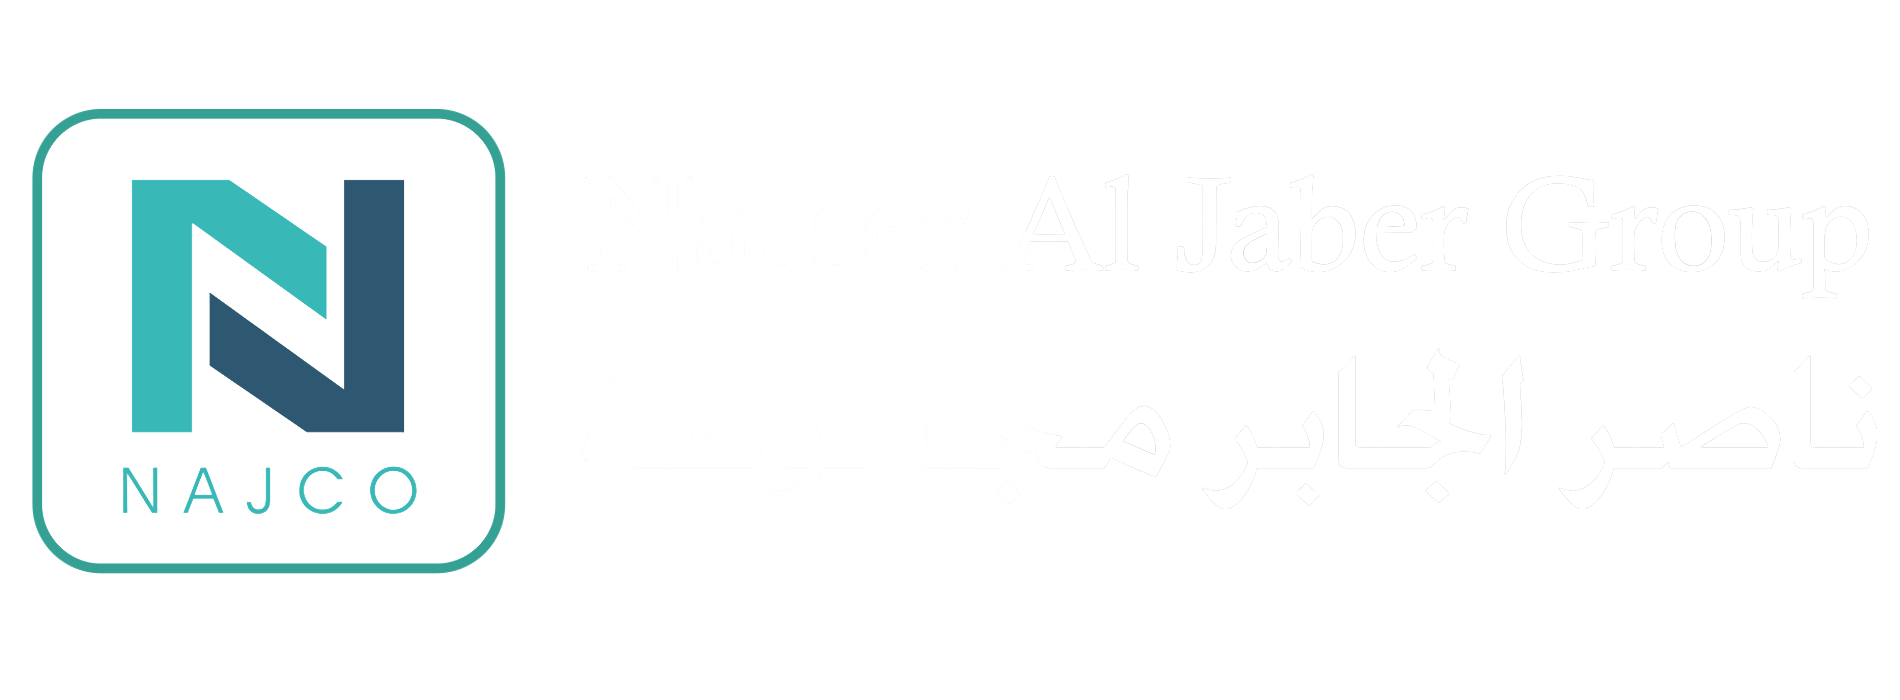 Nase Al Jaber new white